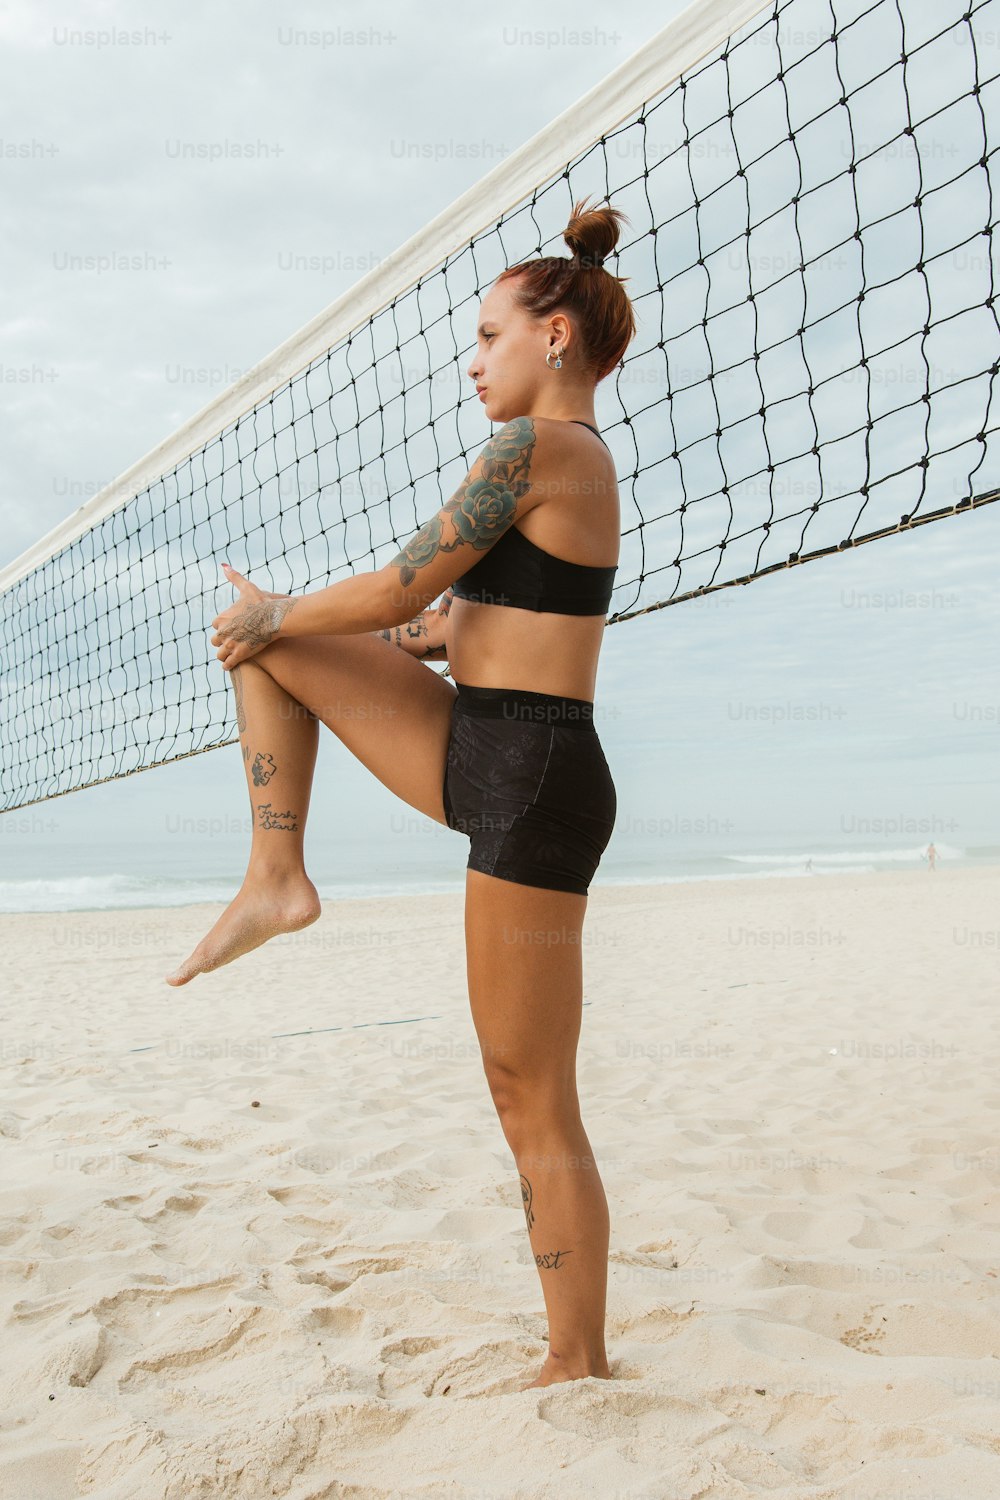 Una mujer parada en una playa junto a una red de voleibol